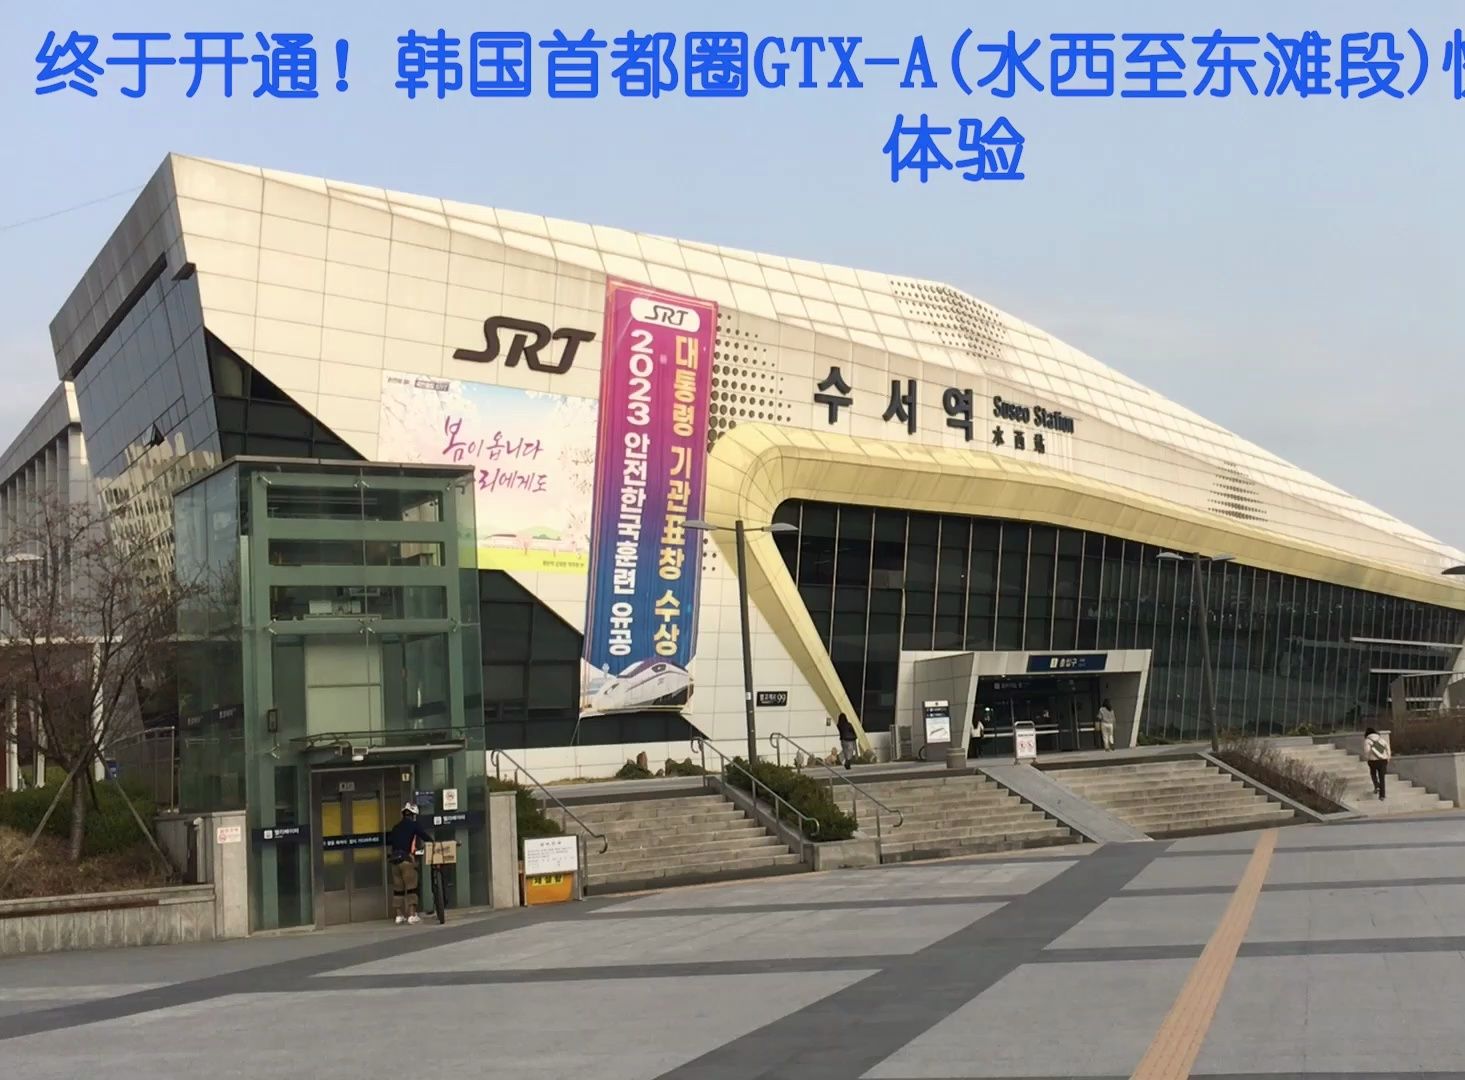 终于开通！韩国首都圈GTX-A(水西至东滩段)快线开通首日体验